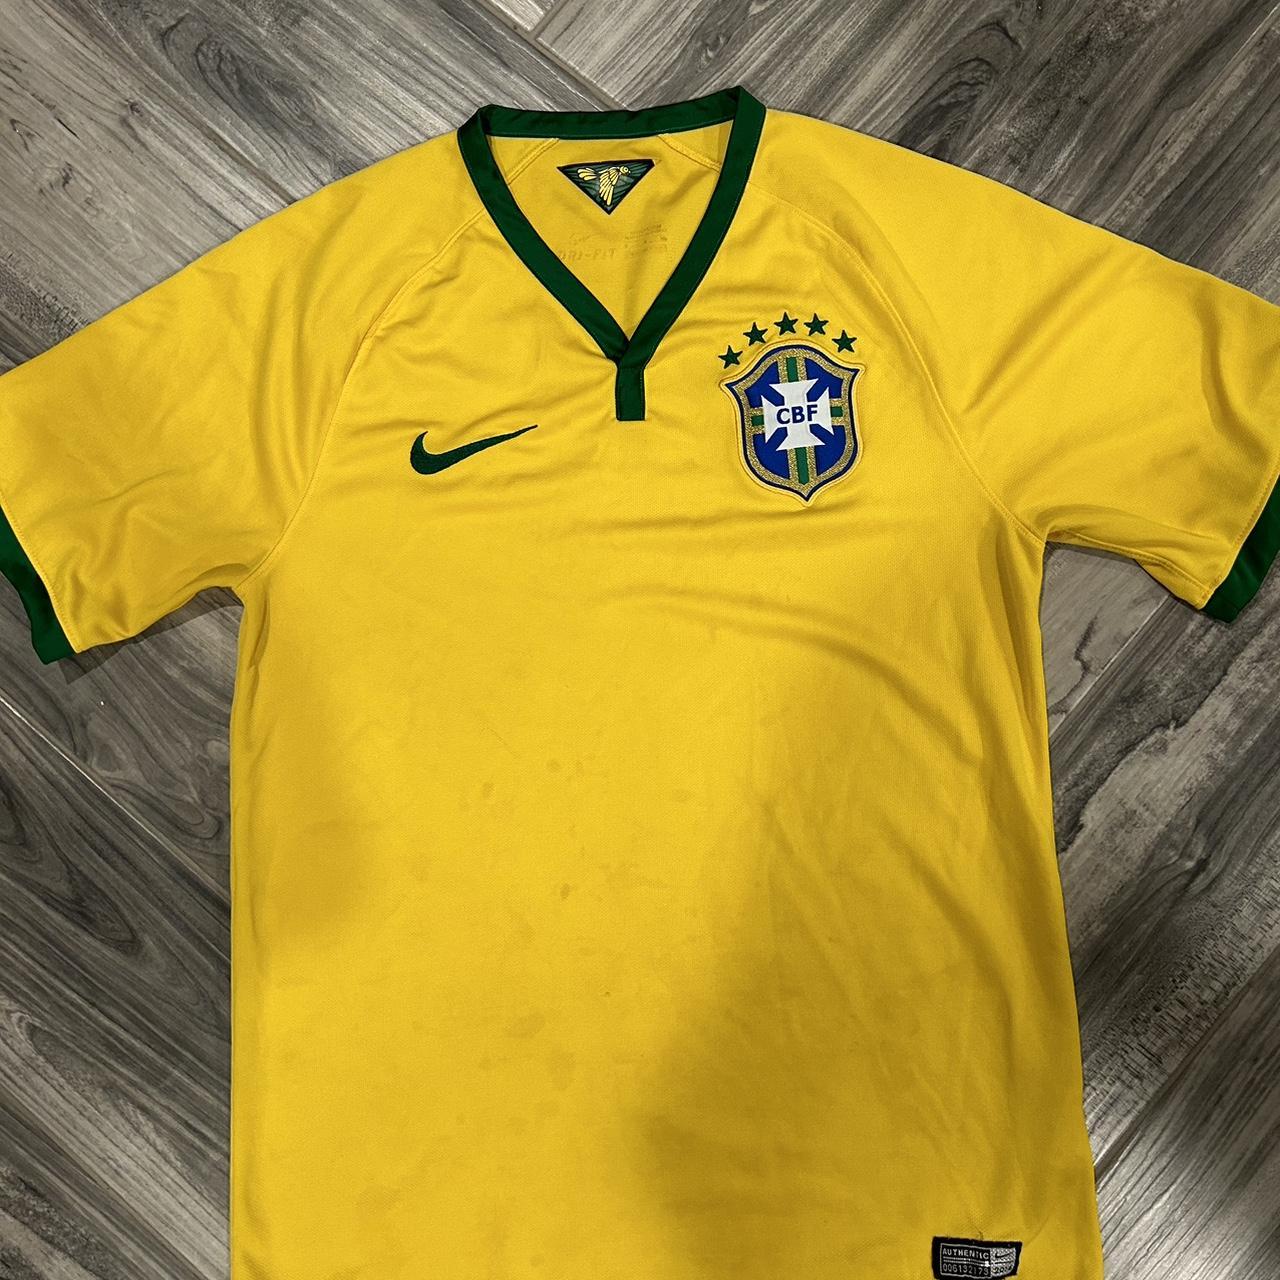 Brazil Soccer Shirt Size: XL No holes or - Depop